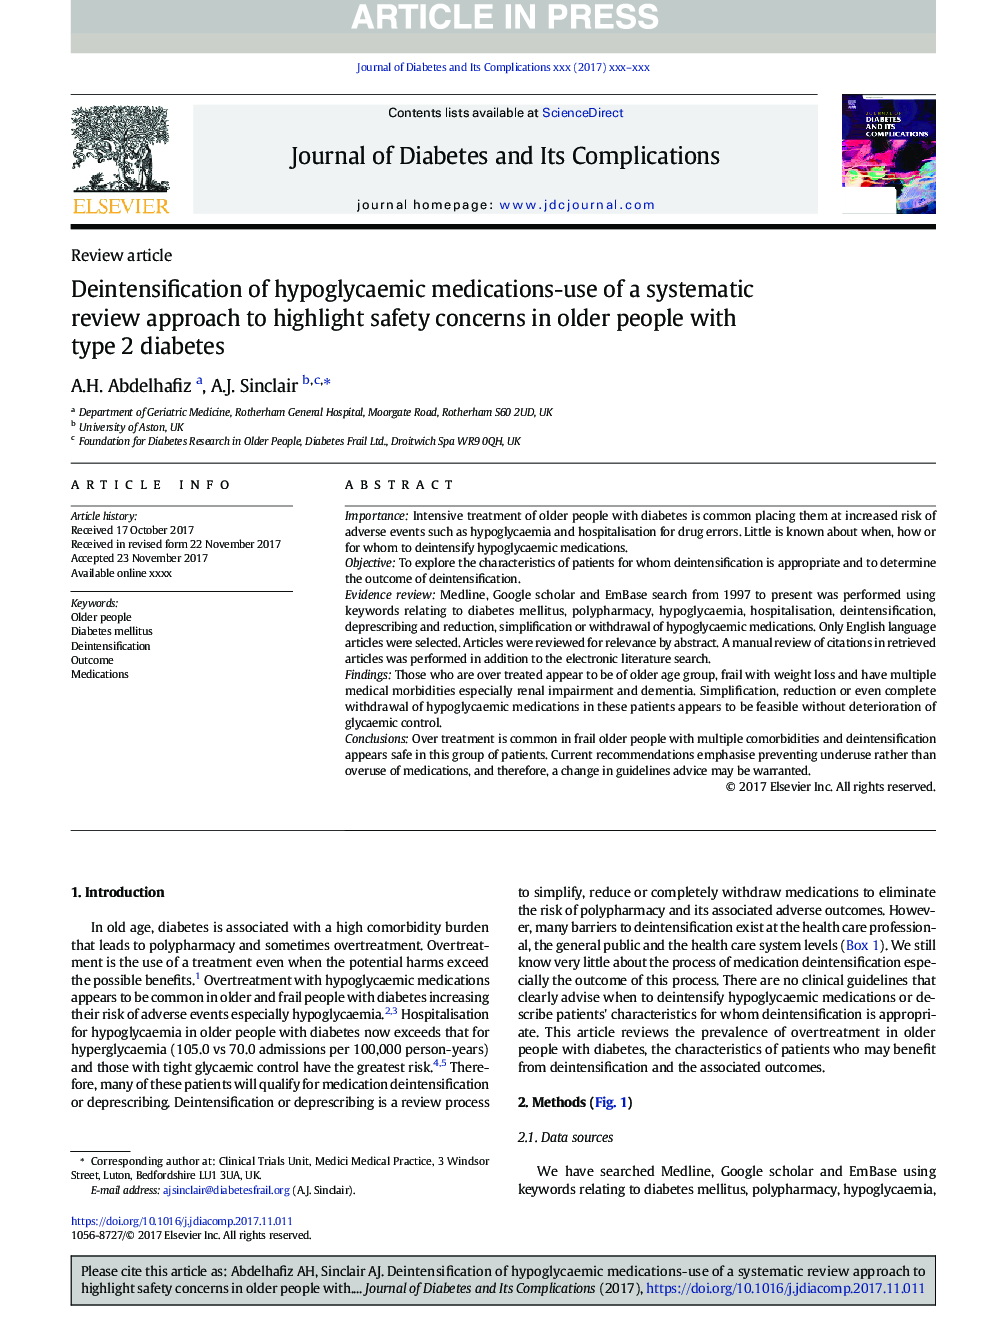 پیشگیری از داروهای هیپوگلیسمی - استفاده از رویکرد بررسی سیستماتیک برای برجسته کردن نگرانی های ایمنی در افراد مسن با دیابت نوع 2 